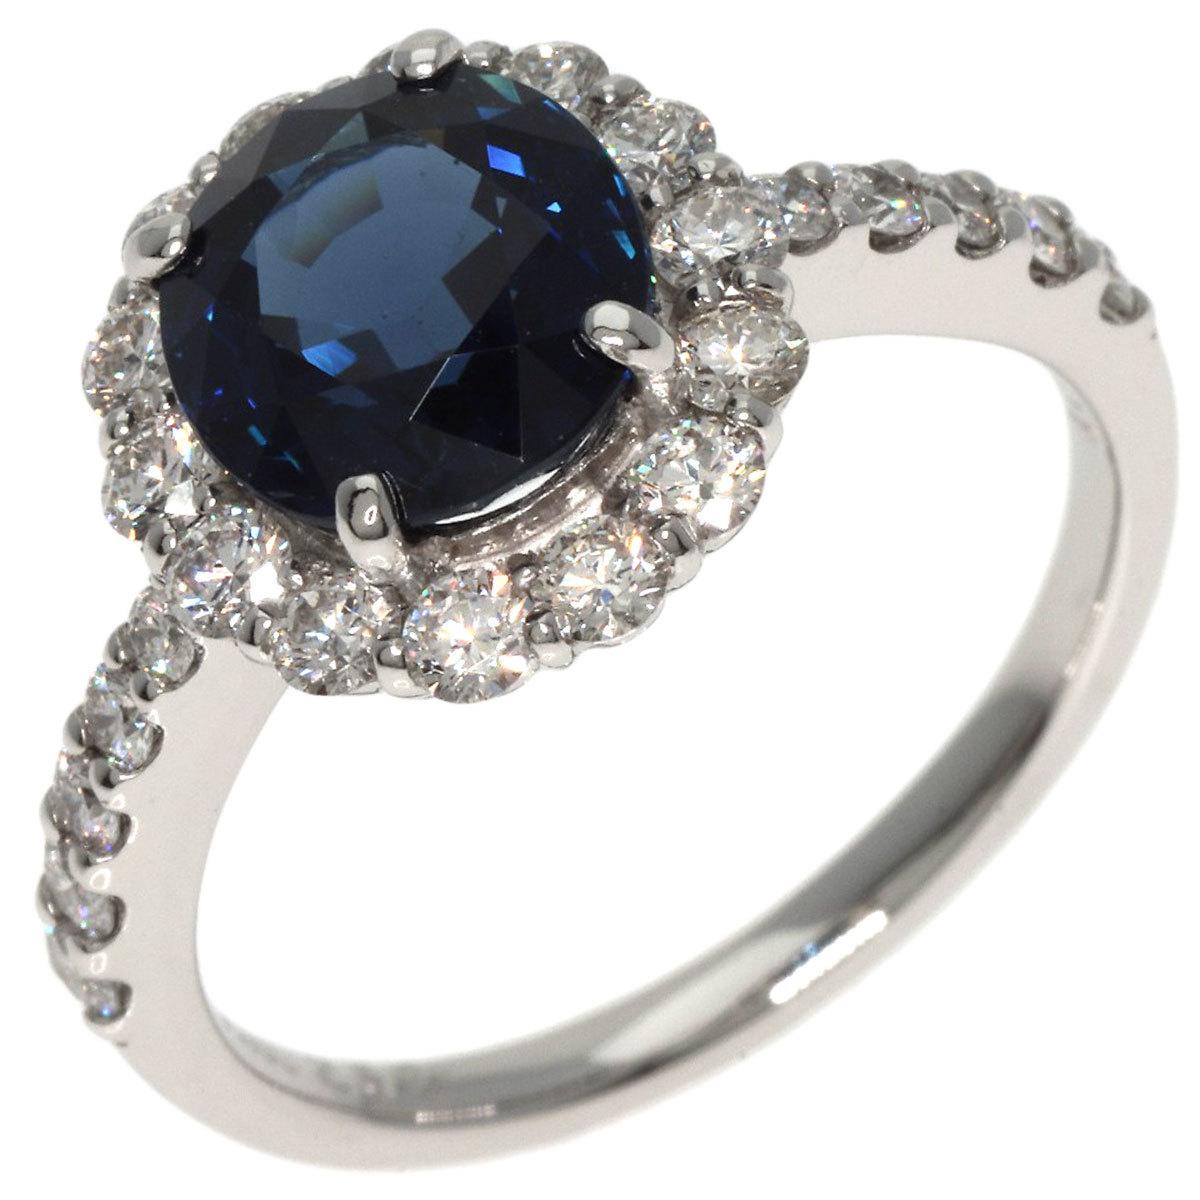 ジュエリー サファイア vivid to deep blue ダイヤモンド リング・指輪 プラチナPT950 中古_画像2